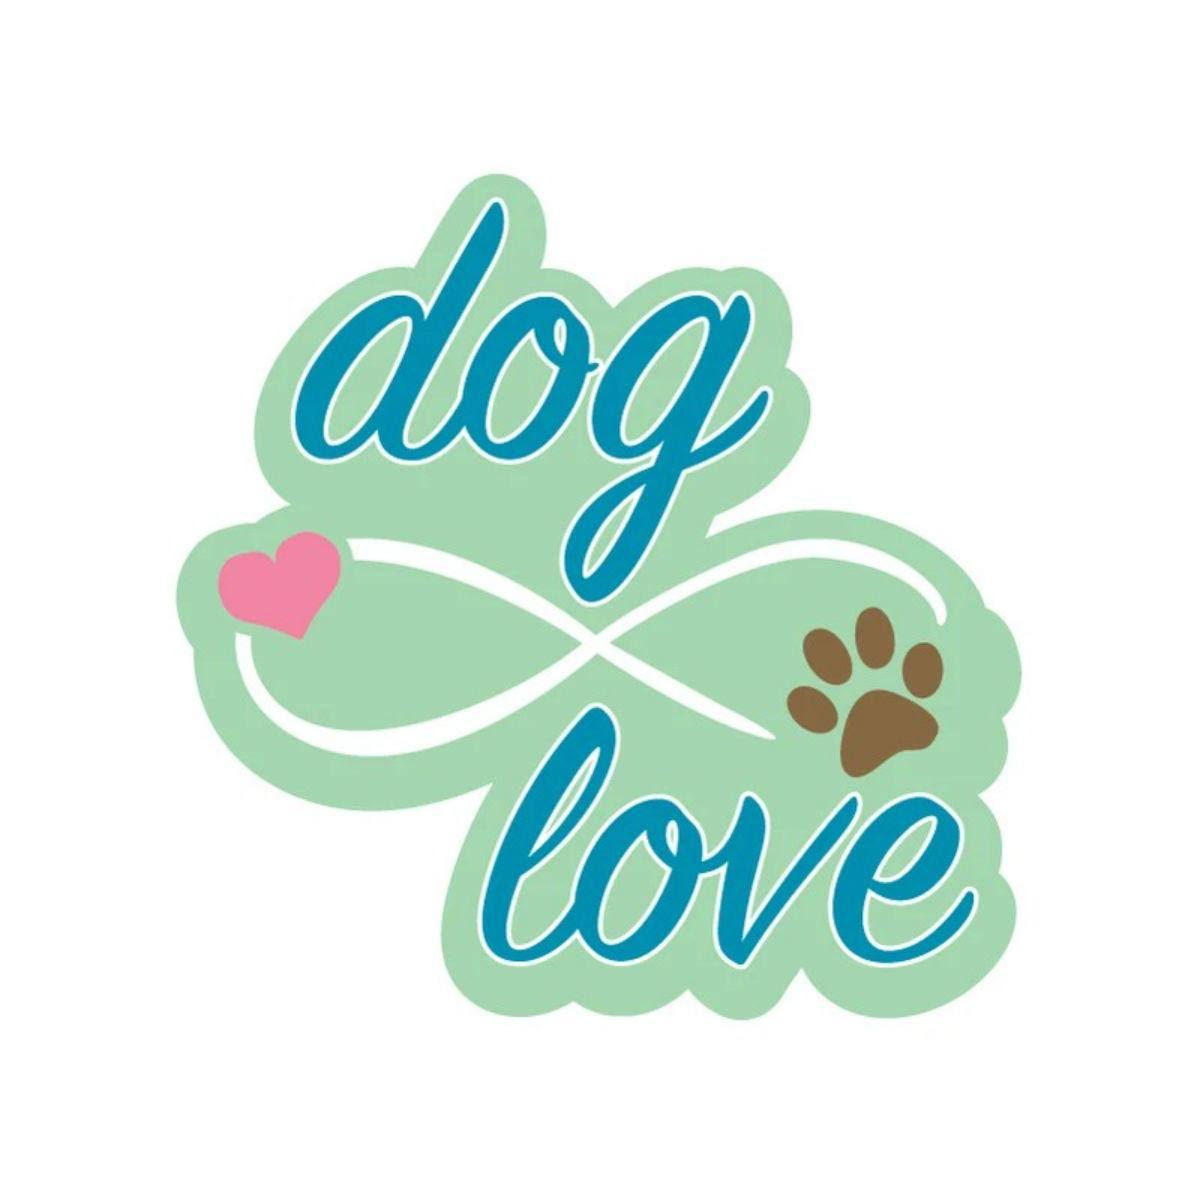 Infinite Dog Love Sticker by Dog Speak - 3" Sticker